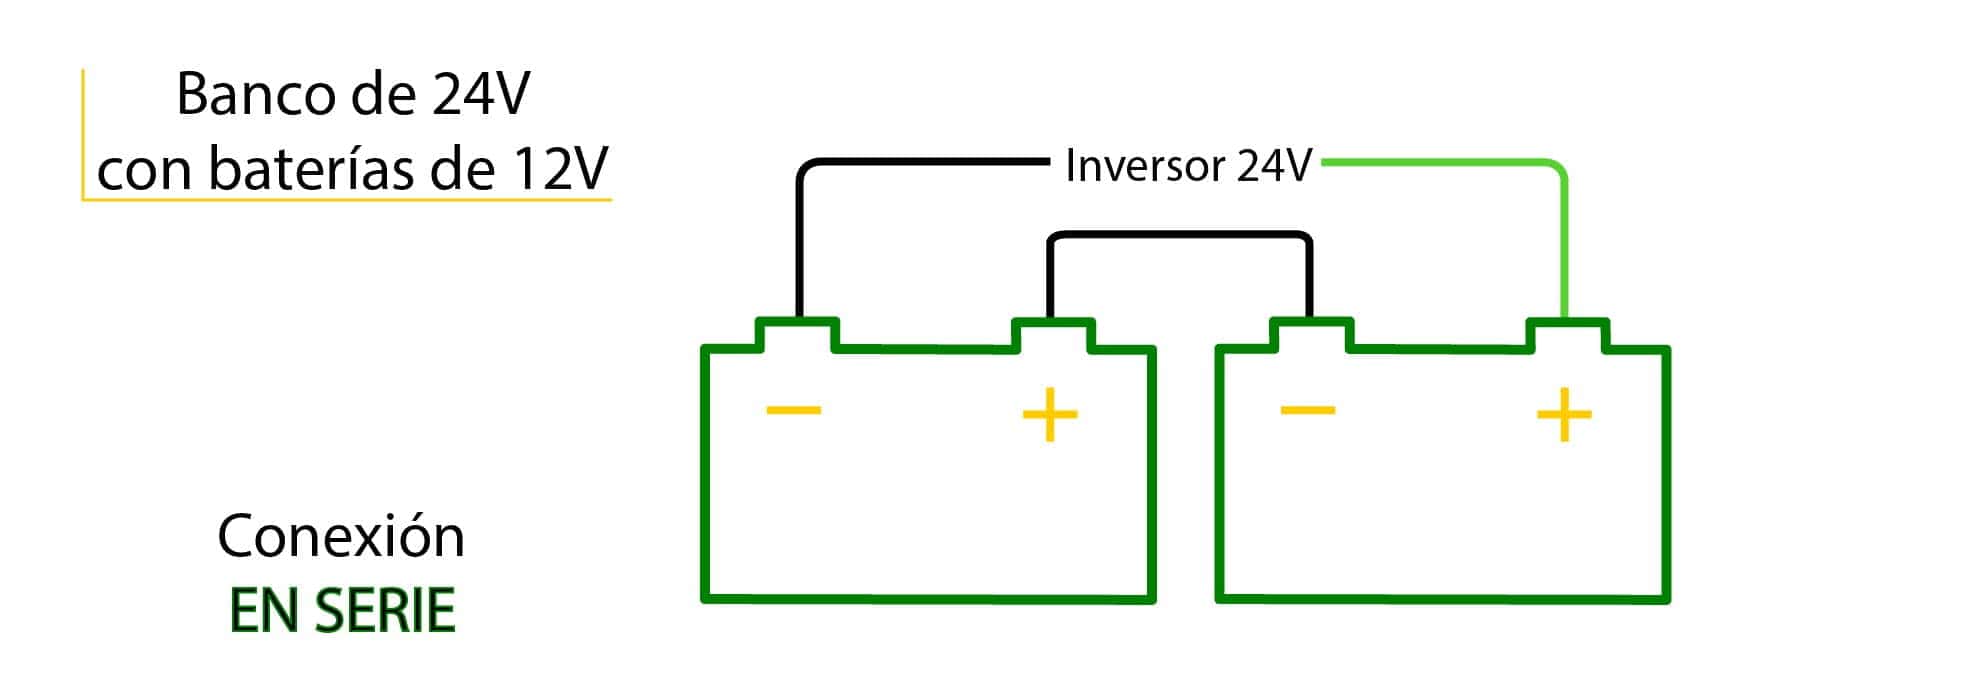 Conexión de baterías de 12V para conseguir un banco de baterías de 24V